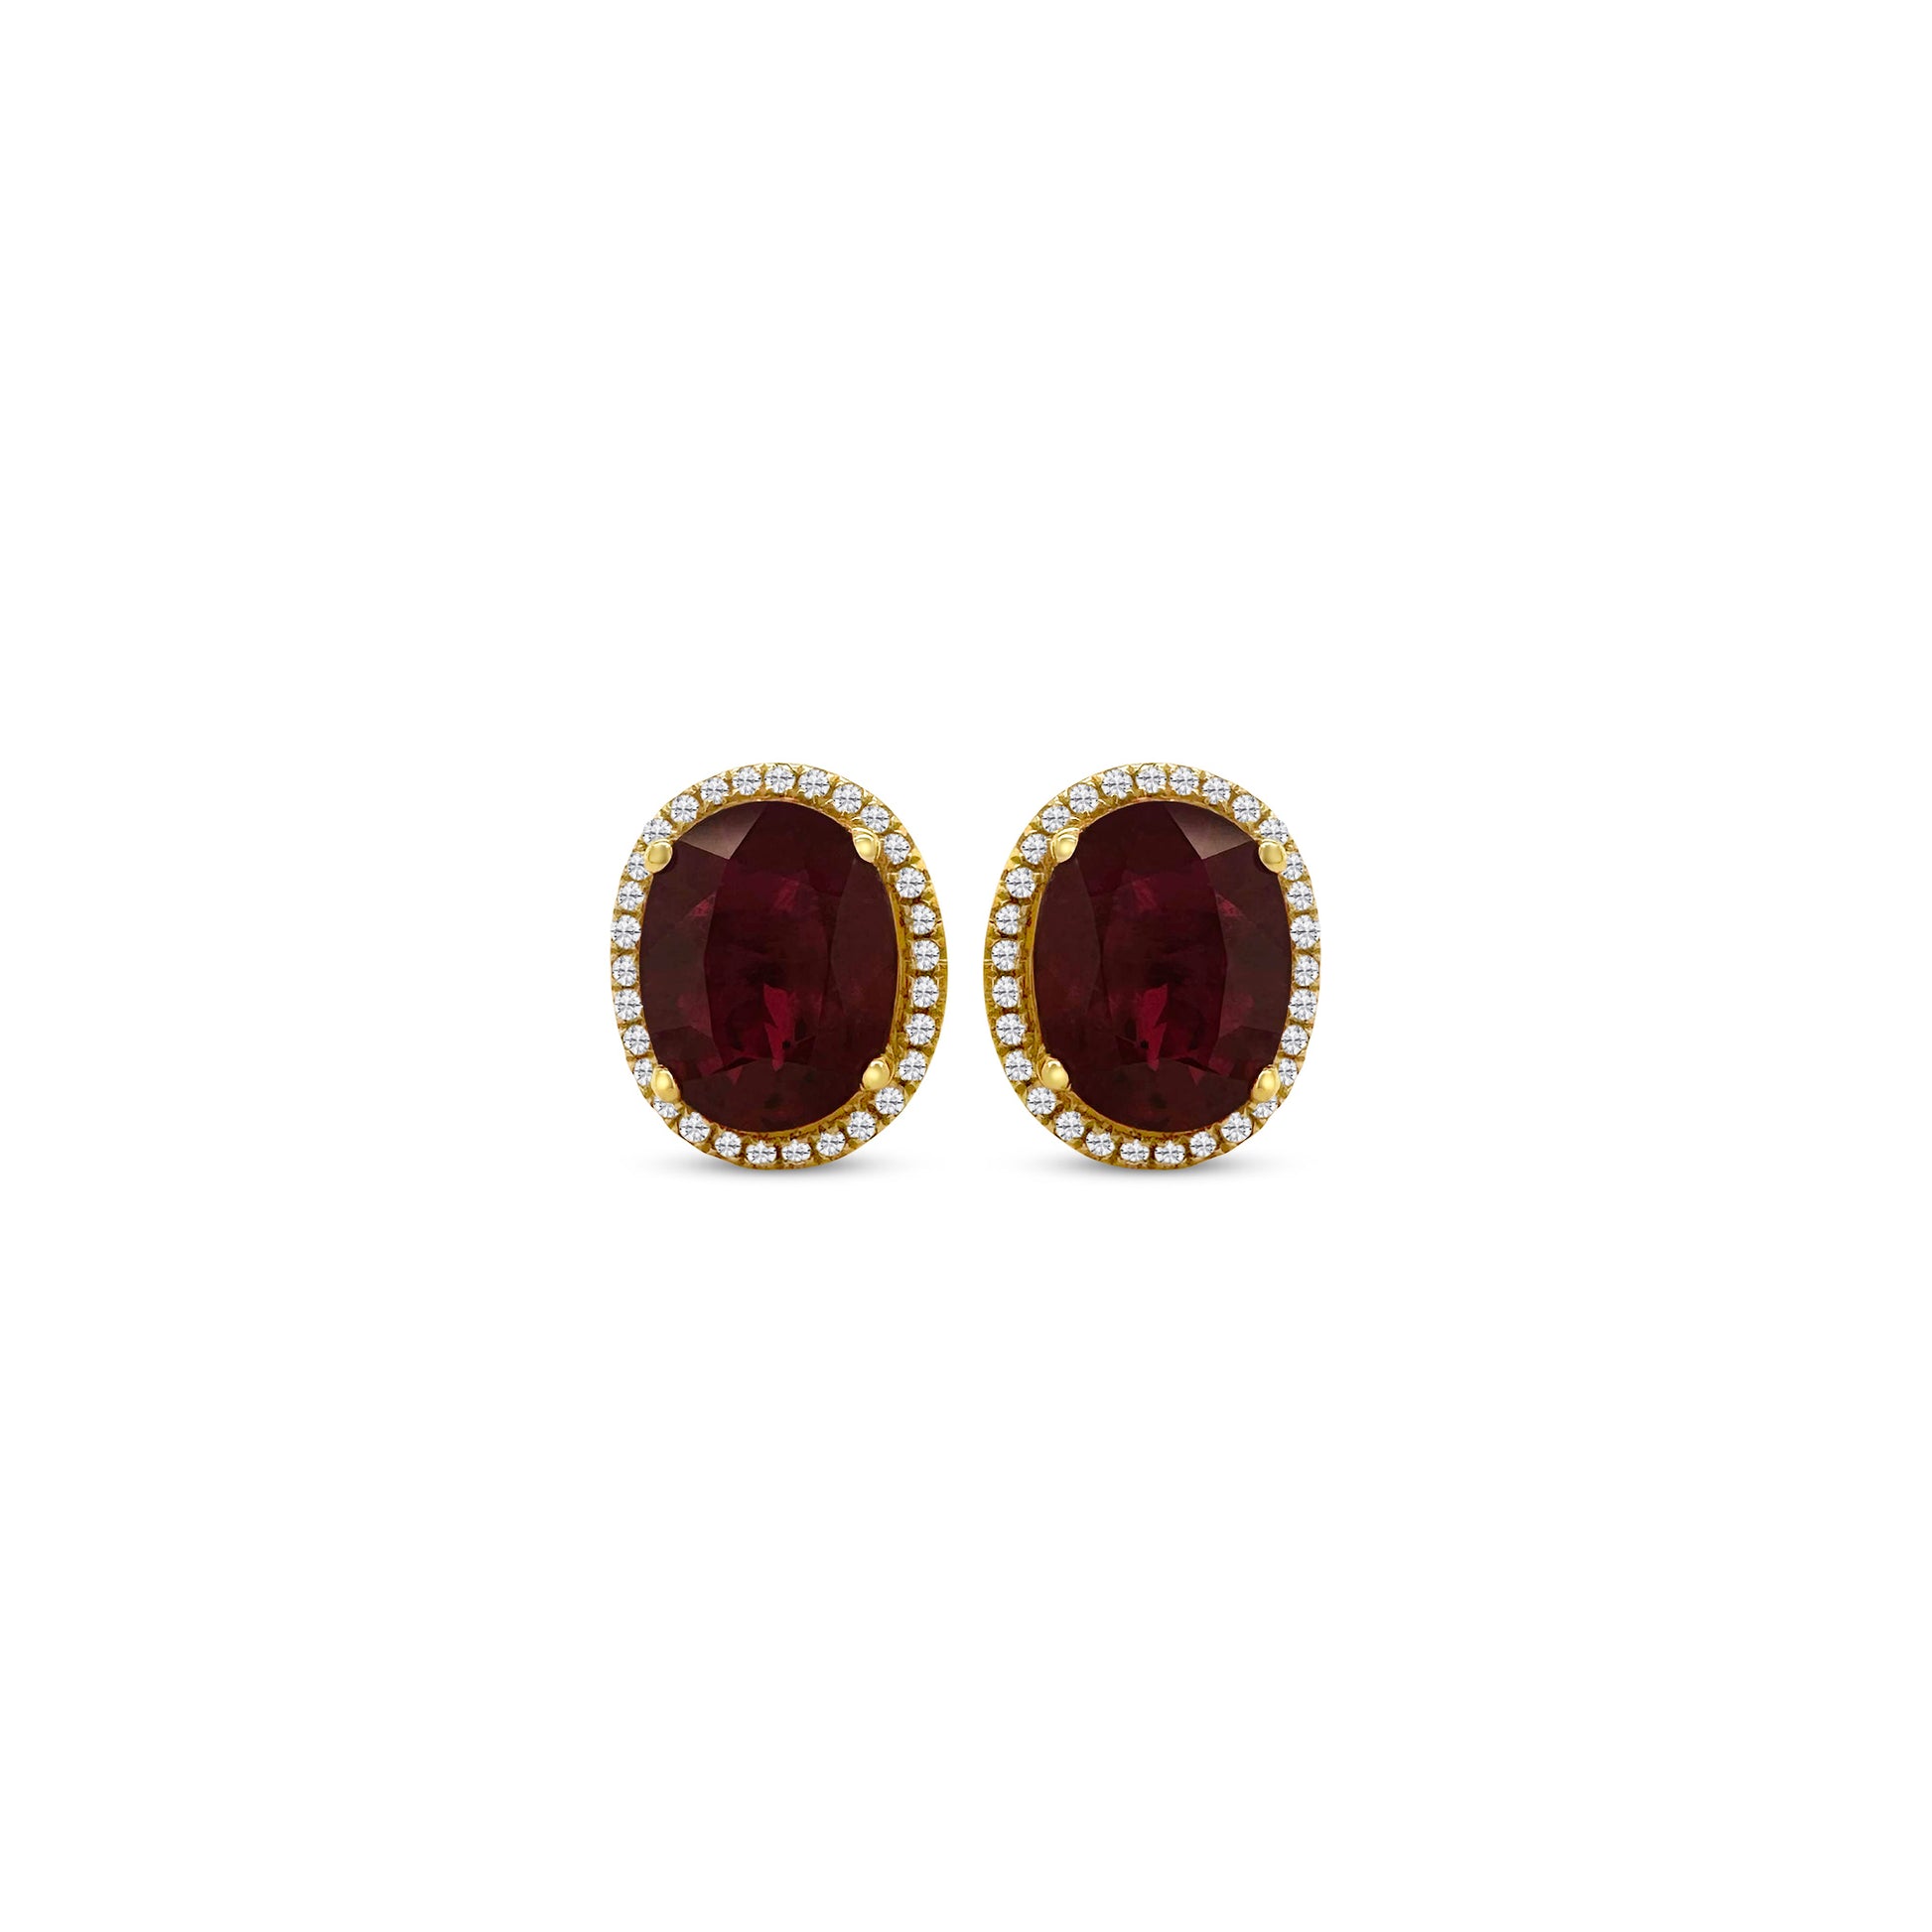 "Oval Ruby & Diamond Halo Stud Earrings": "Oval Ruby Earrings," "Diamond Halo Studs," "Ruby and Diamond Jewelry," "Gemstone Stud Earrings," "Fine Jewelry Accessories," "Luxury Earring Collection," "Red Gemstone Studs," "Sparkling Diamond Accents," "Elegant Gemstone Jewelry," "Statement Earrings."